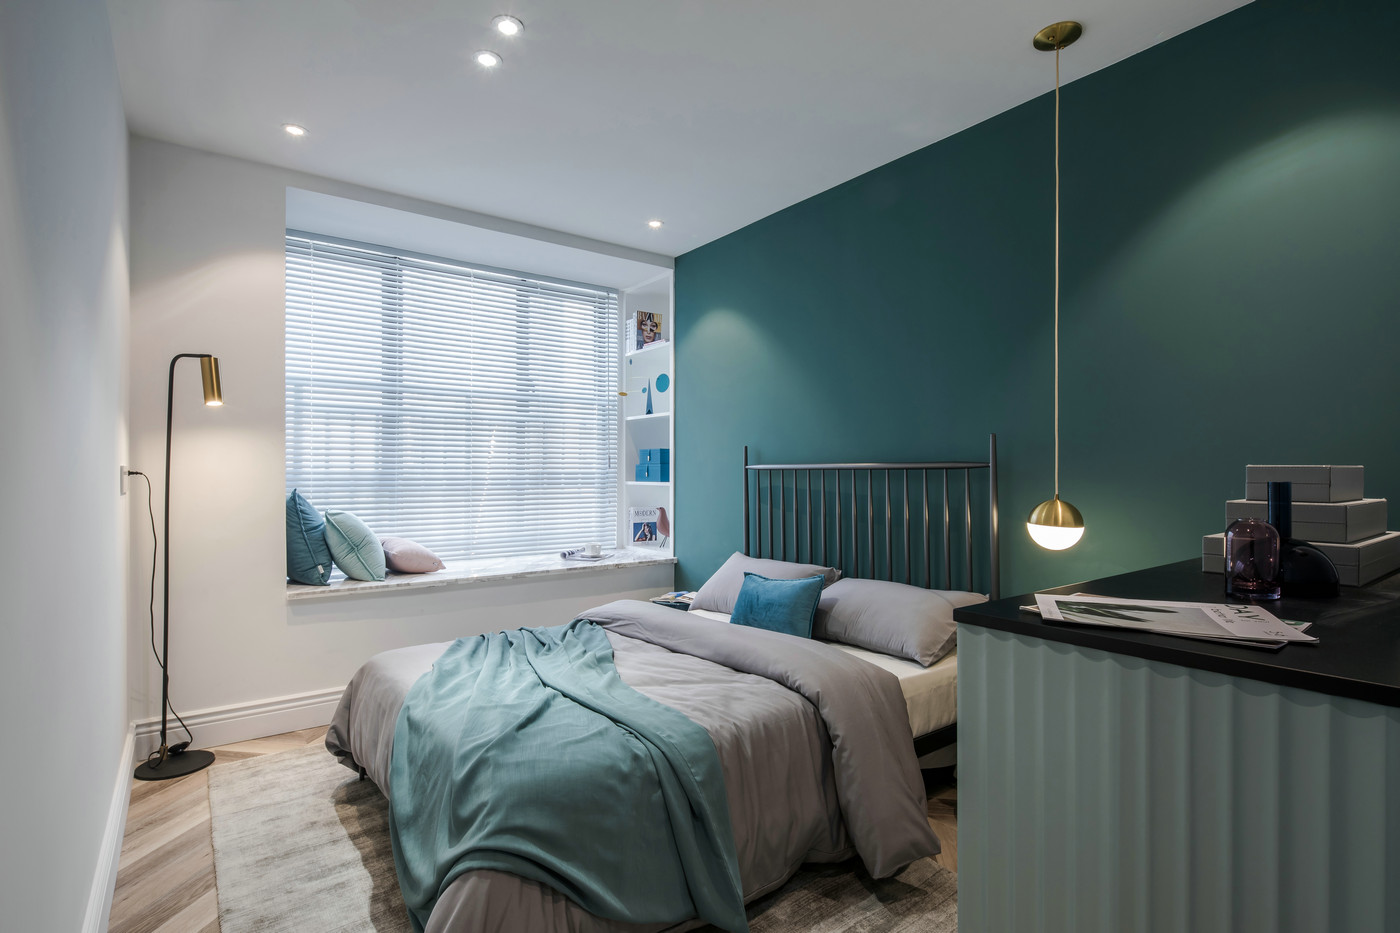 绿色背景墙设计简约，床头垂吊灯具为空间带来了丰富的细节质感。